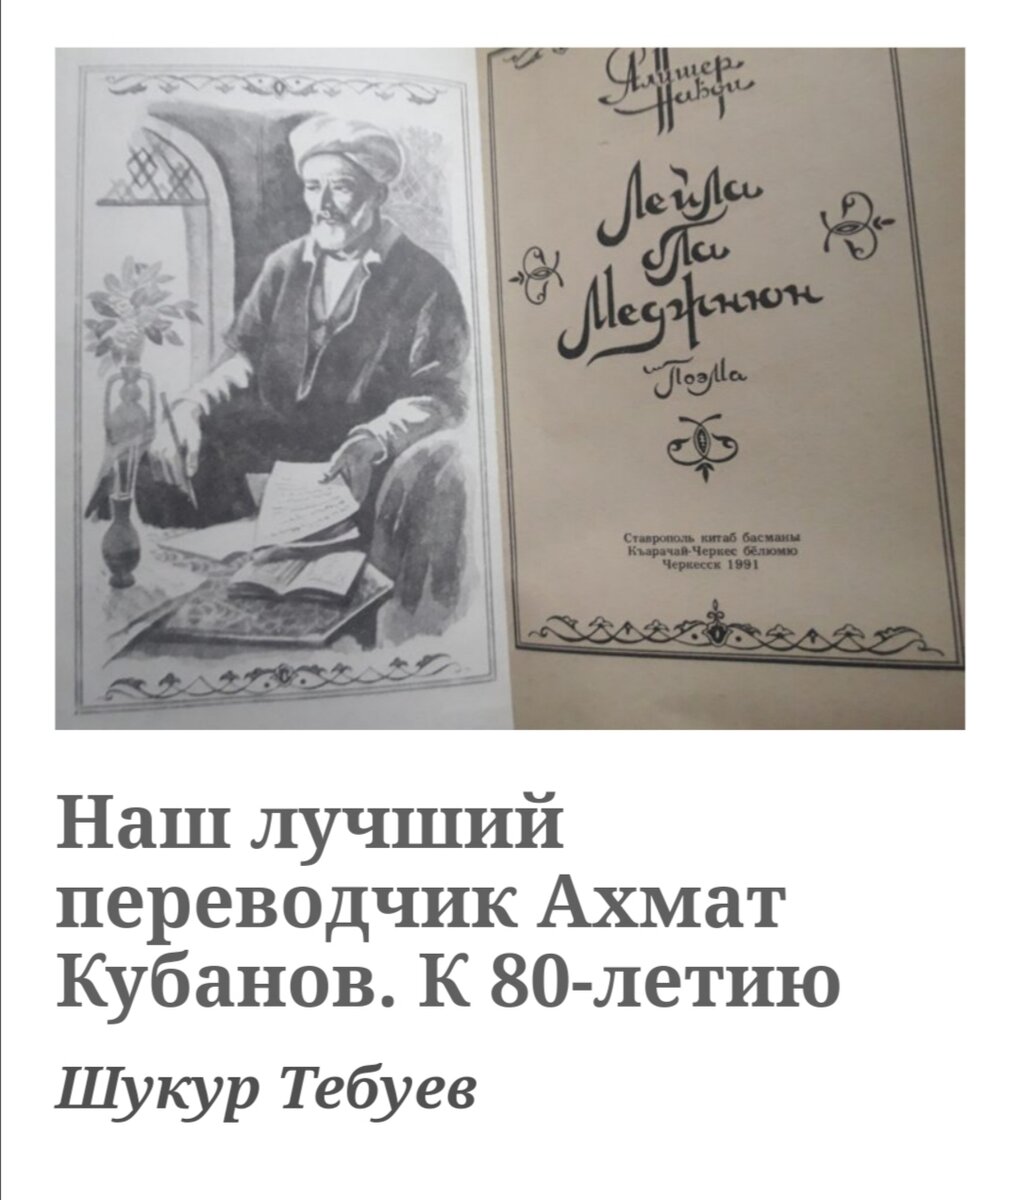 К 100-летию писателя, поэта, сценариста и воина Дагира Кубанова